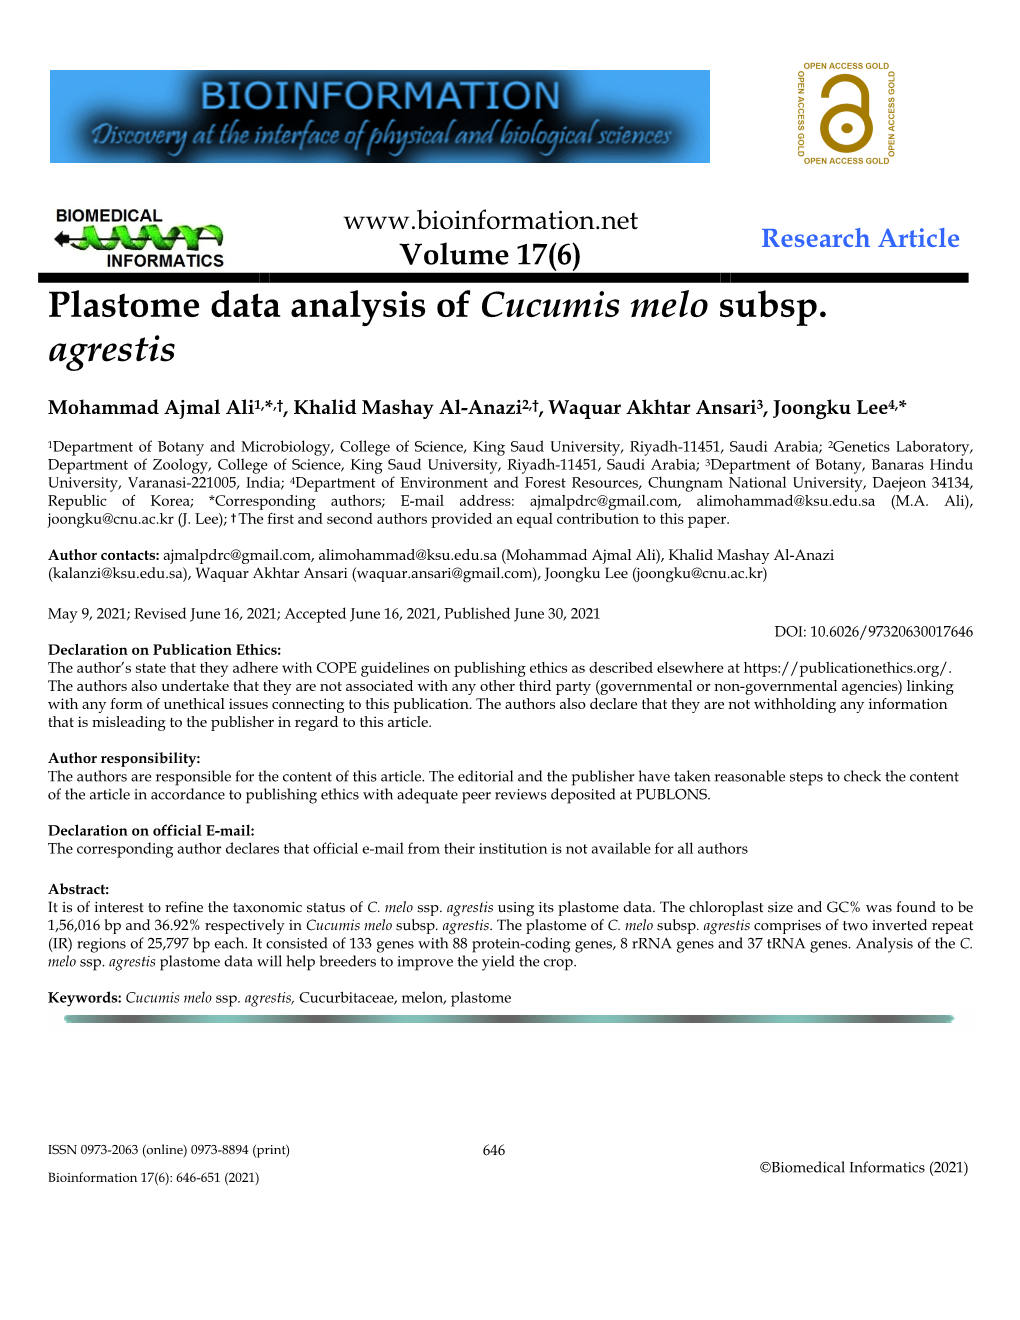 Plastome Data Analysis of Cucumis Melo Subsp. Agrestis